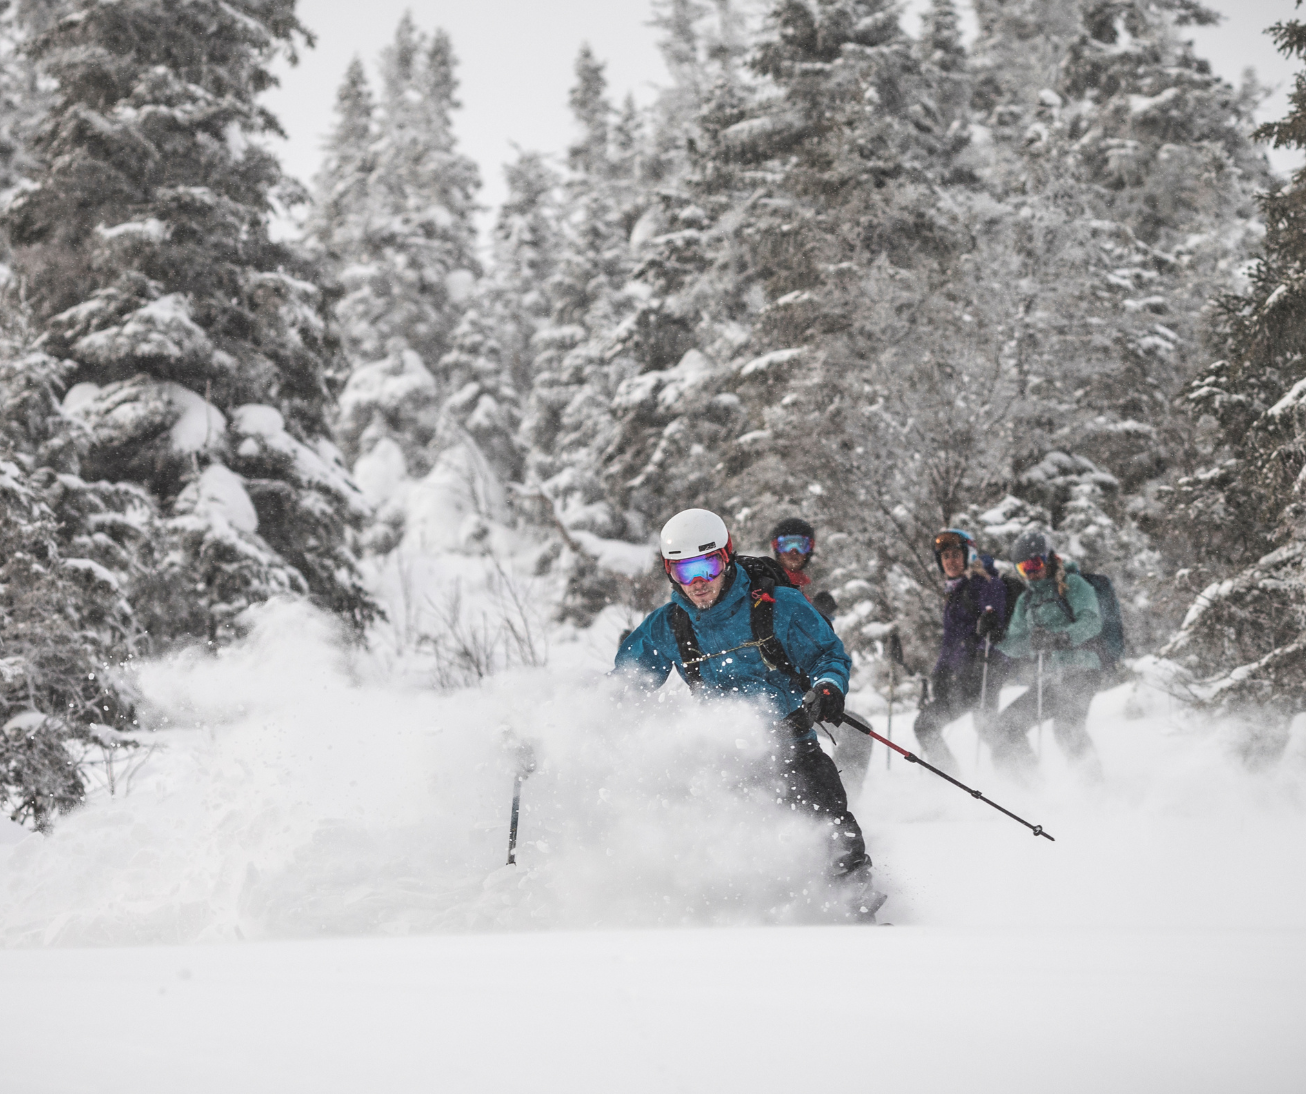 groupe de skieurs descendant une pente enneigée en forêt